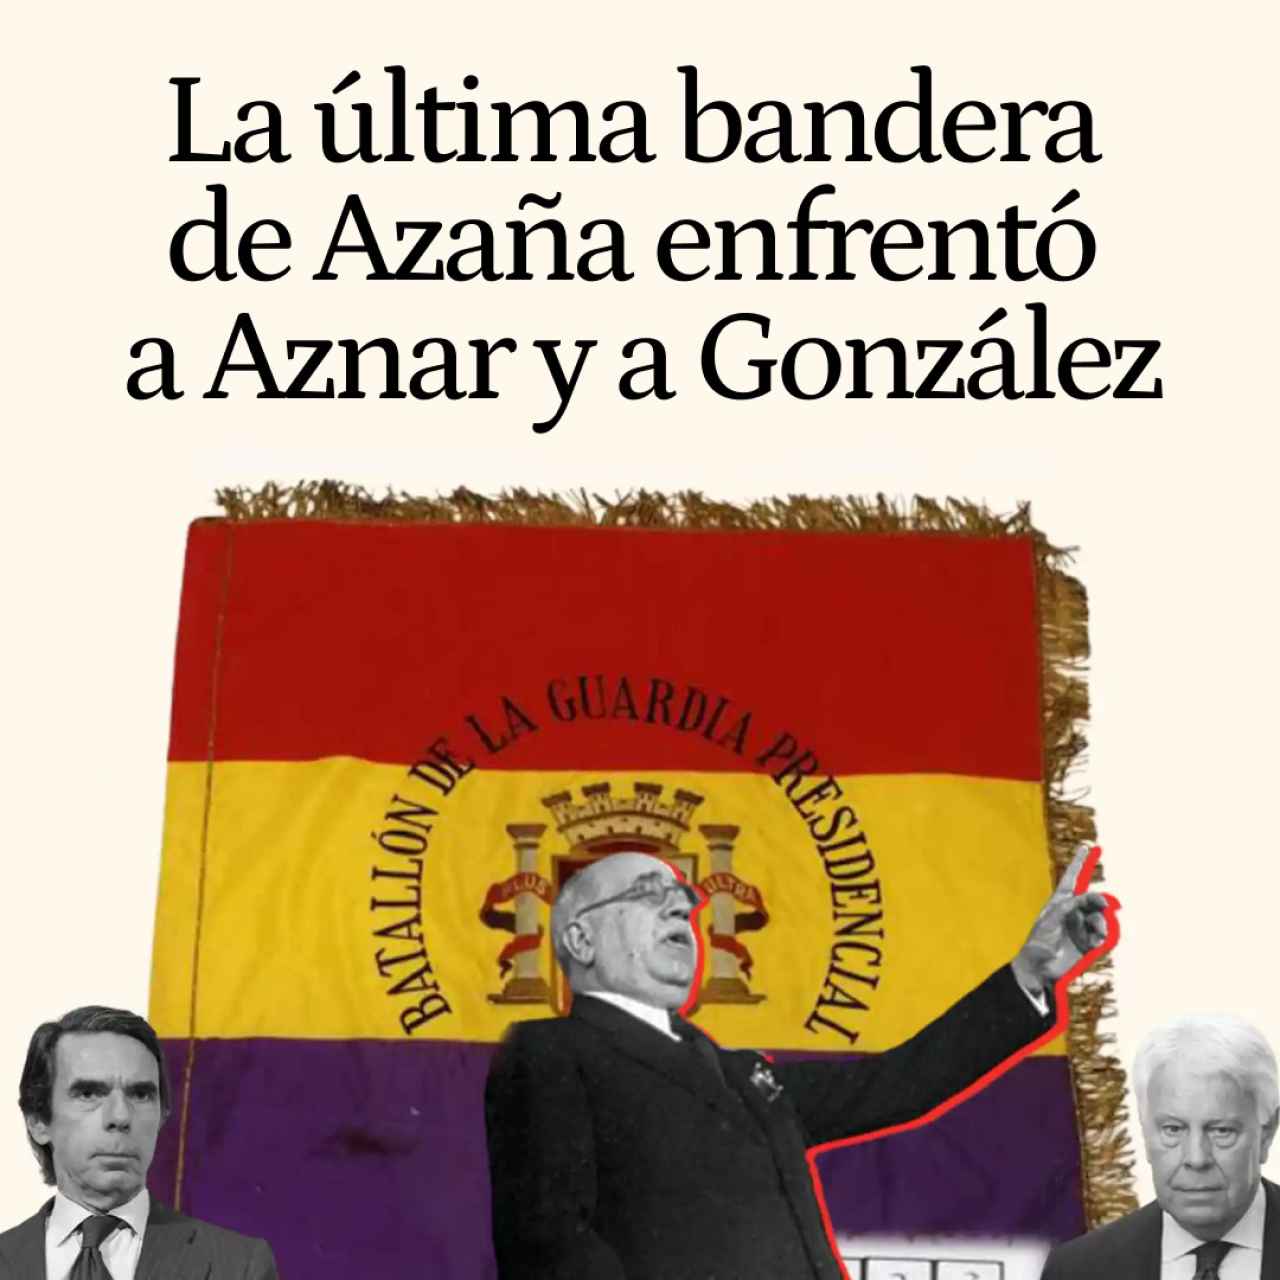 Desvelado el misterio de la última bandera de Azaña: una intriga política que enfrentó a Aznar y a Felipe